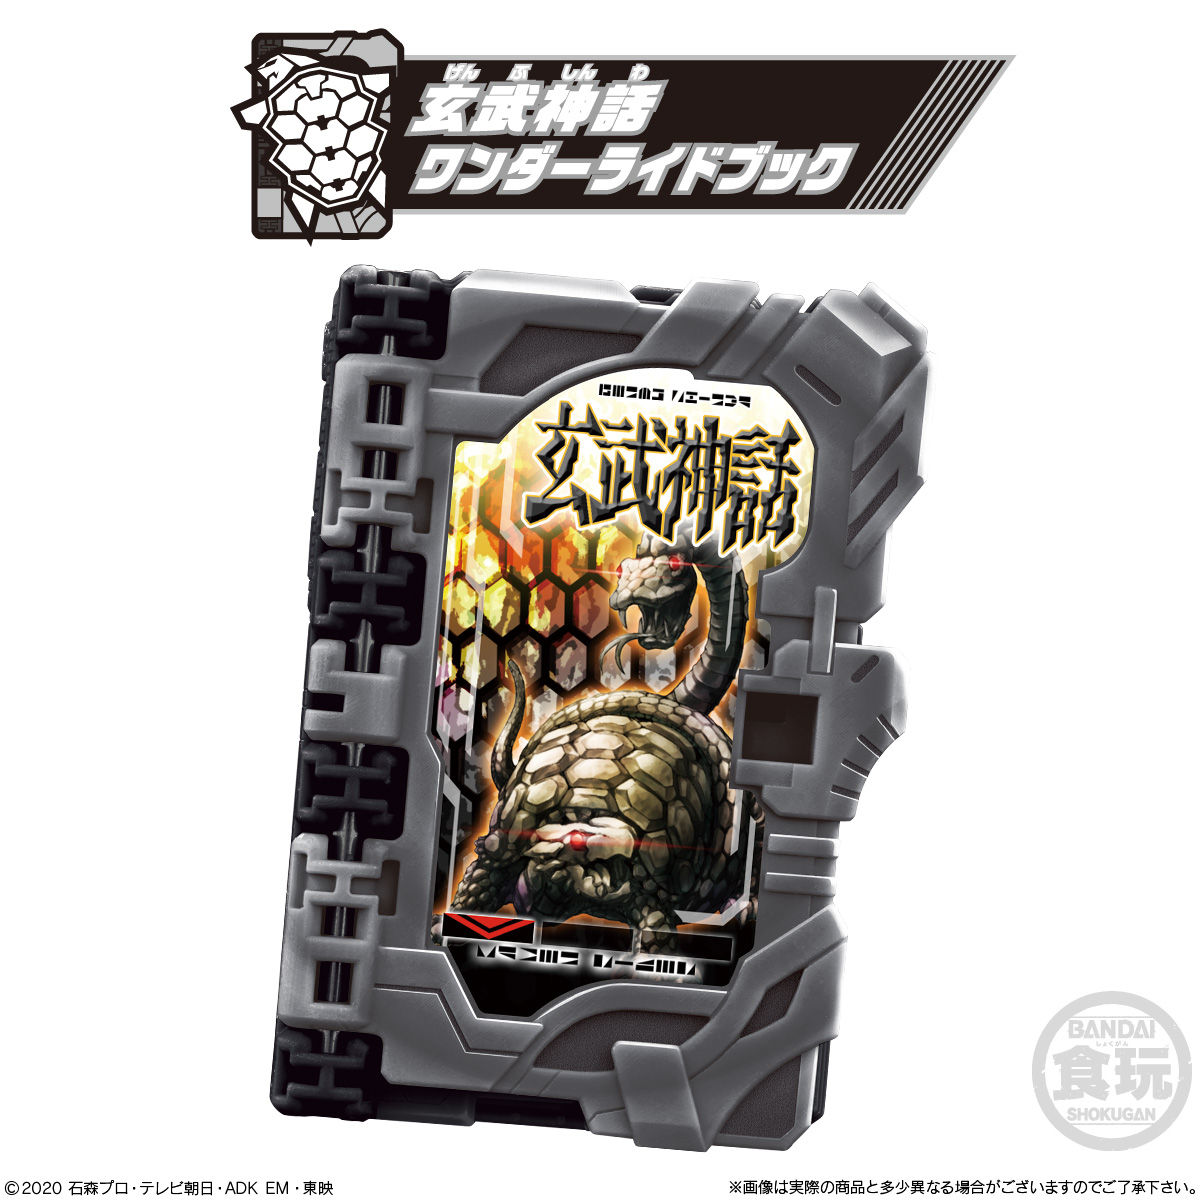 【食玩】仮面ライダーセイバー『コレクタブルワンダーライドブック SG02』8個入りBOX-005